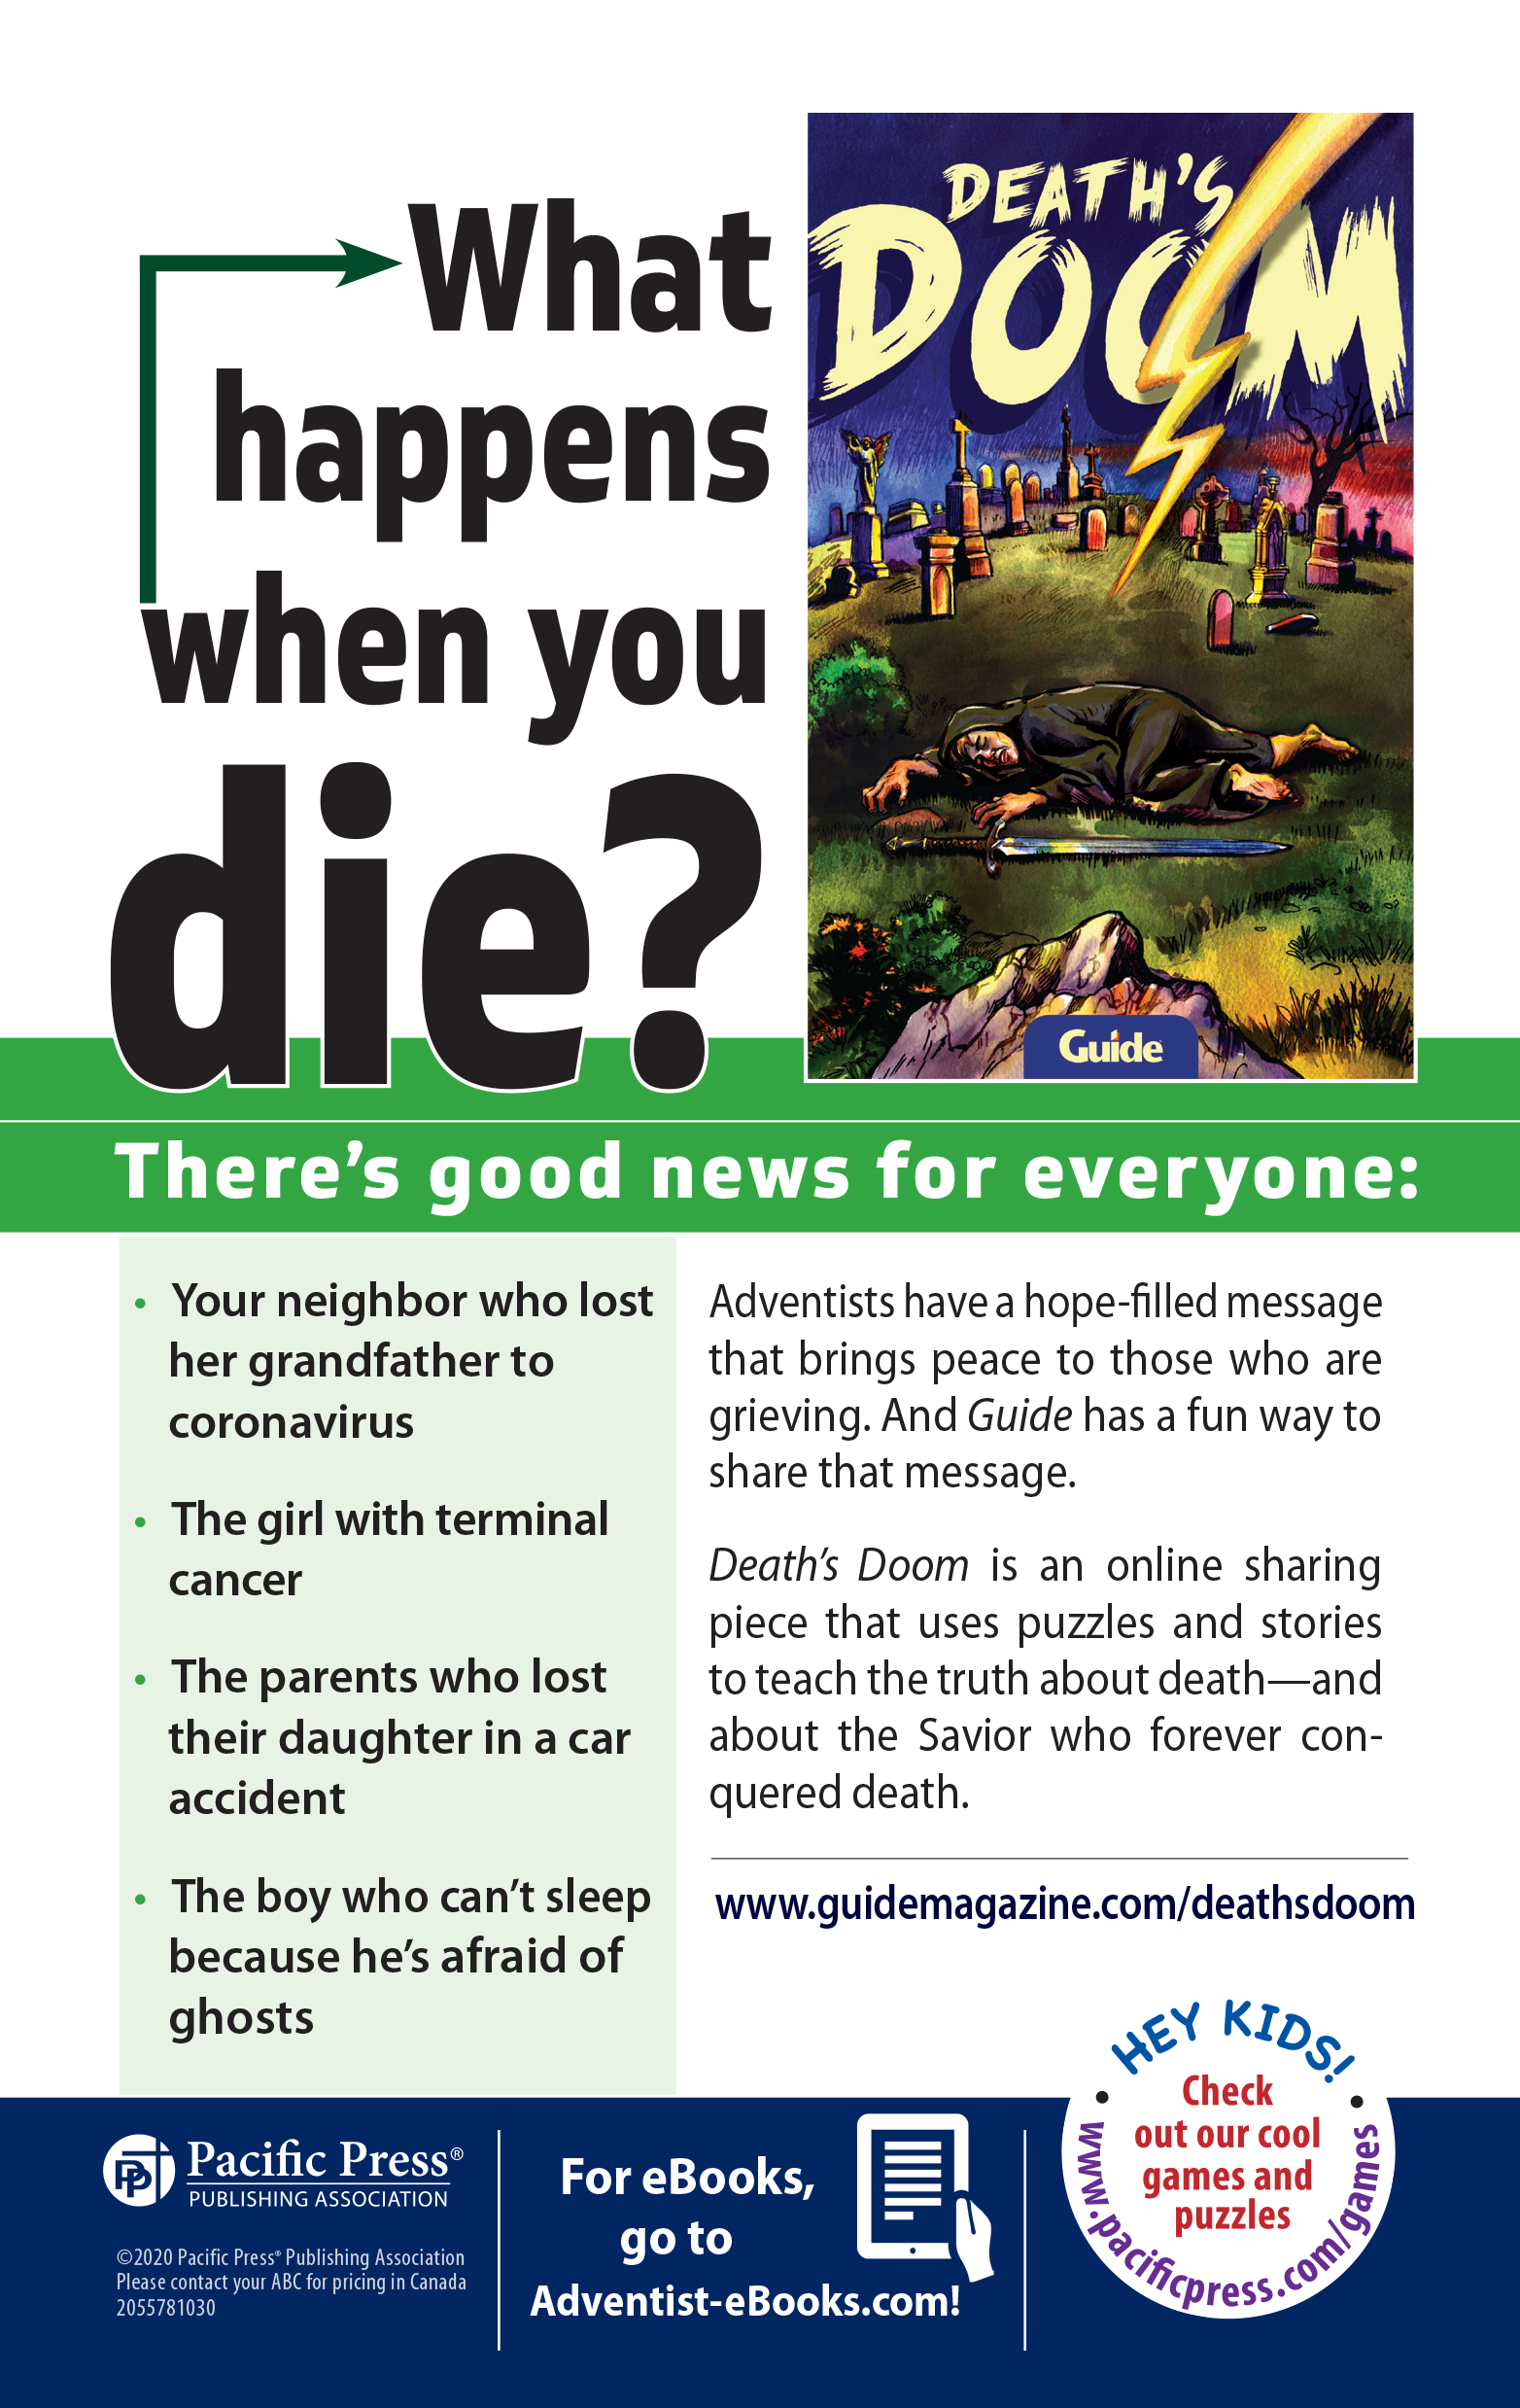 Flyer promoting Guide's book entitled "Death's Doom"